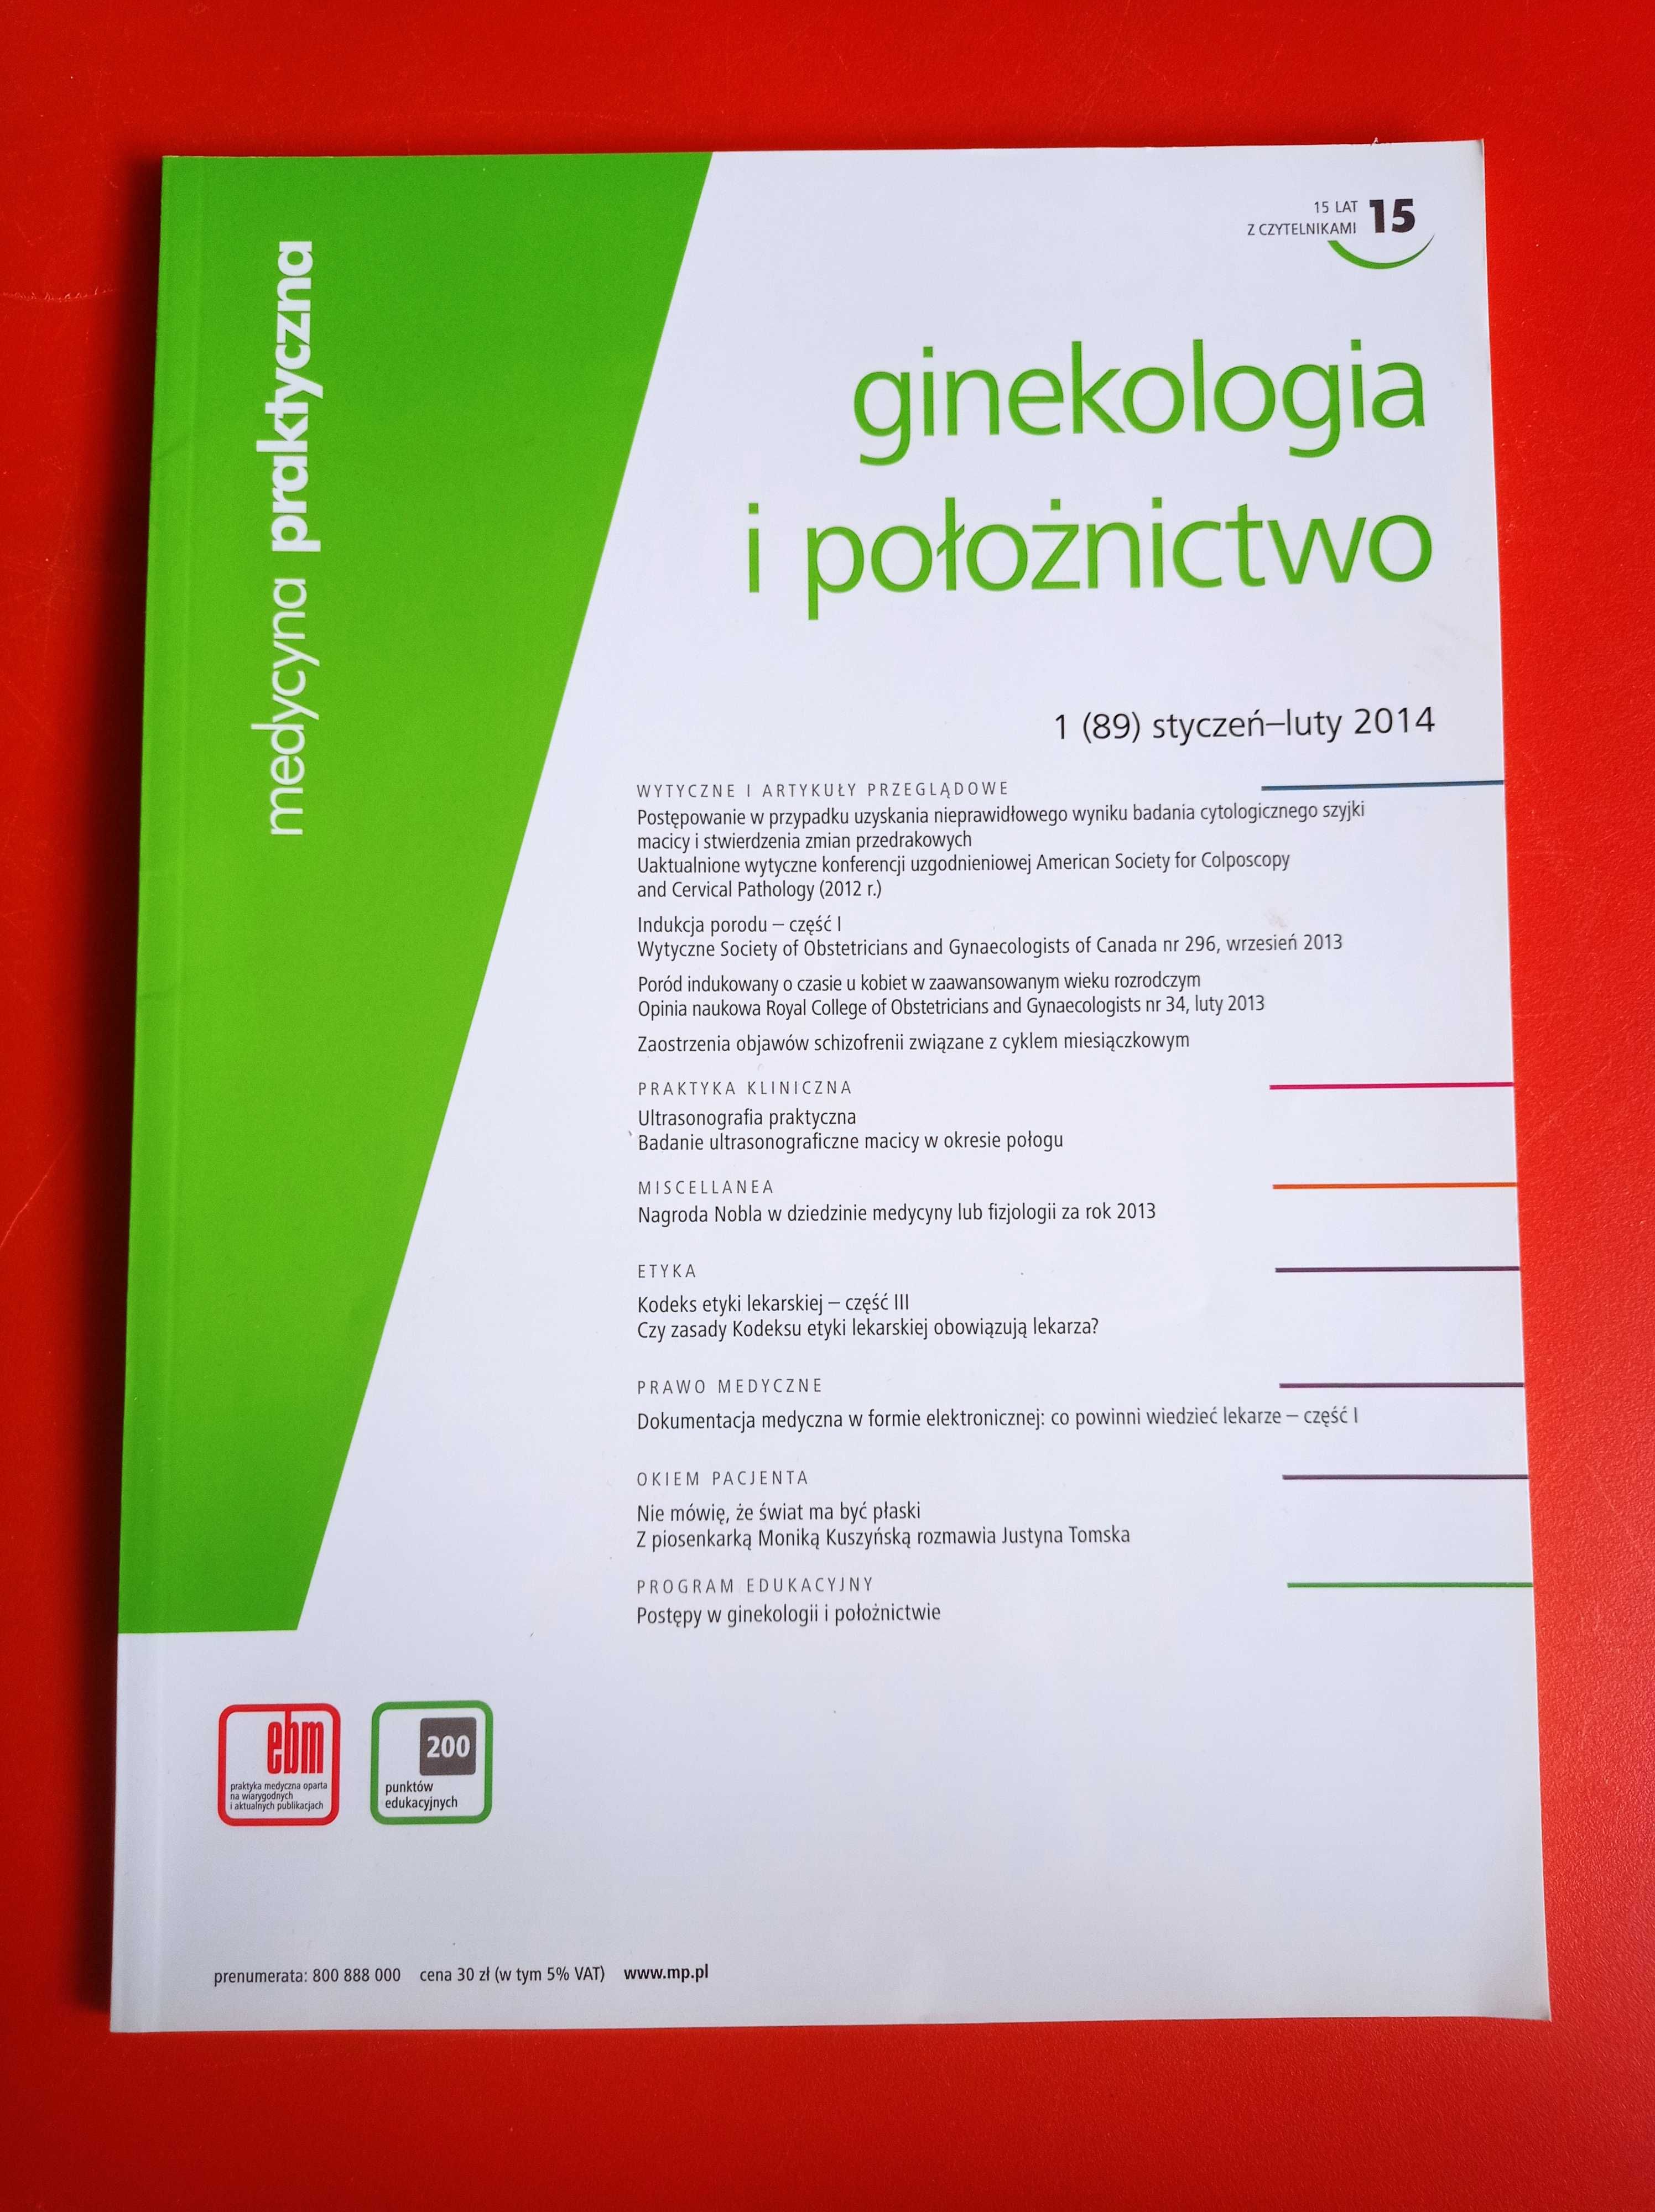 Ginekologia i Położnictwo 1/2014, styczeń-luty 2014